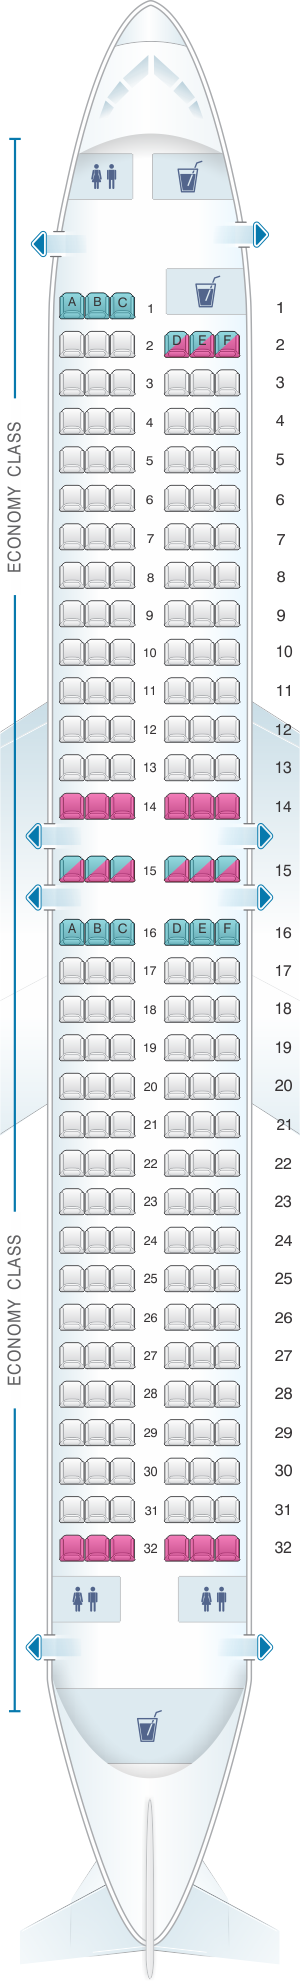 Boeing 767 Tui Seating Plan